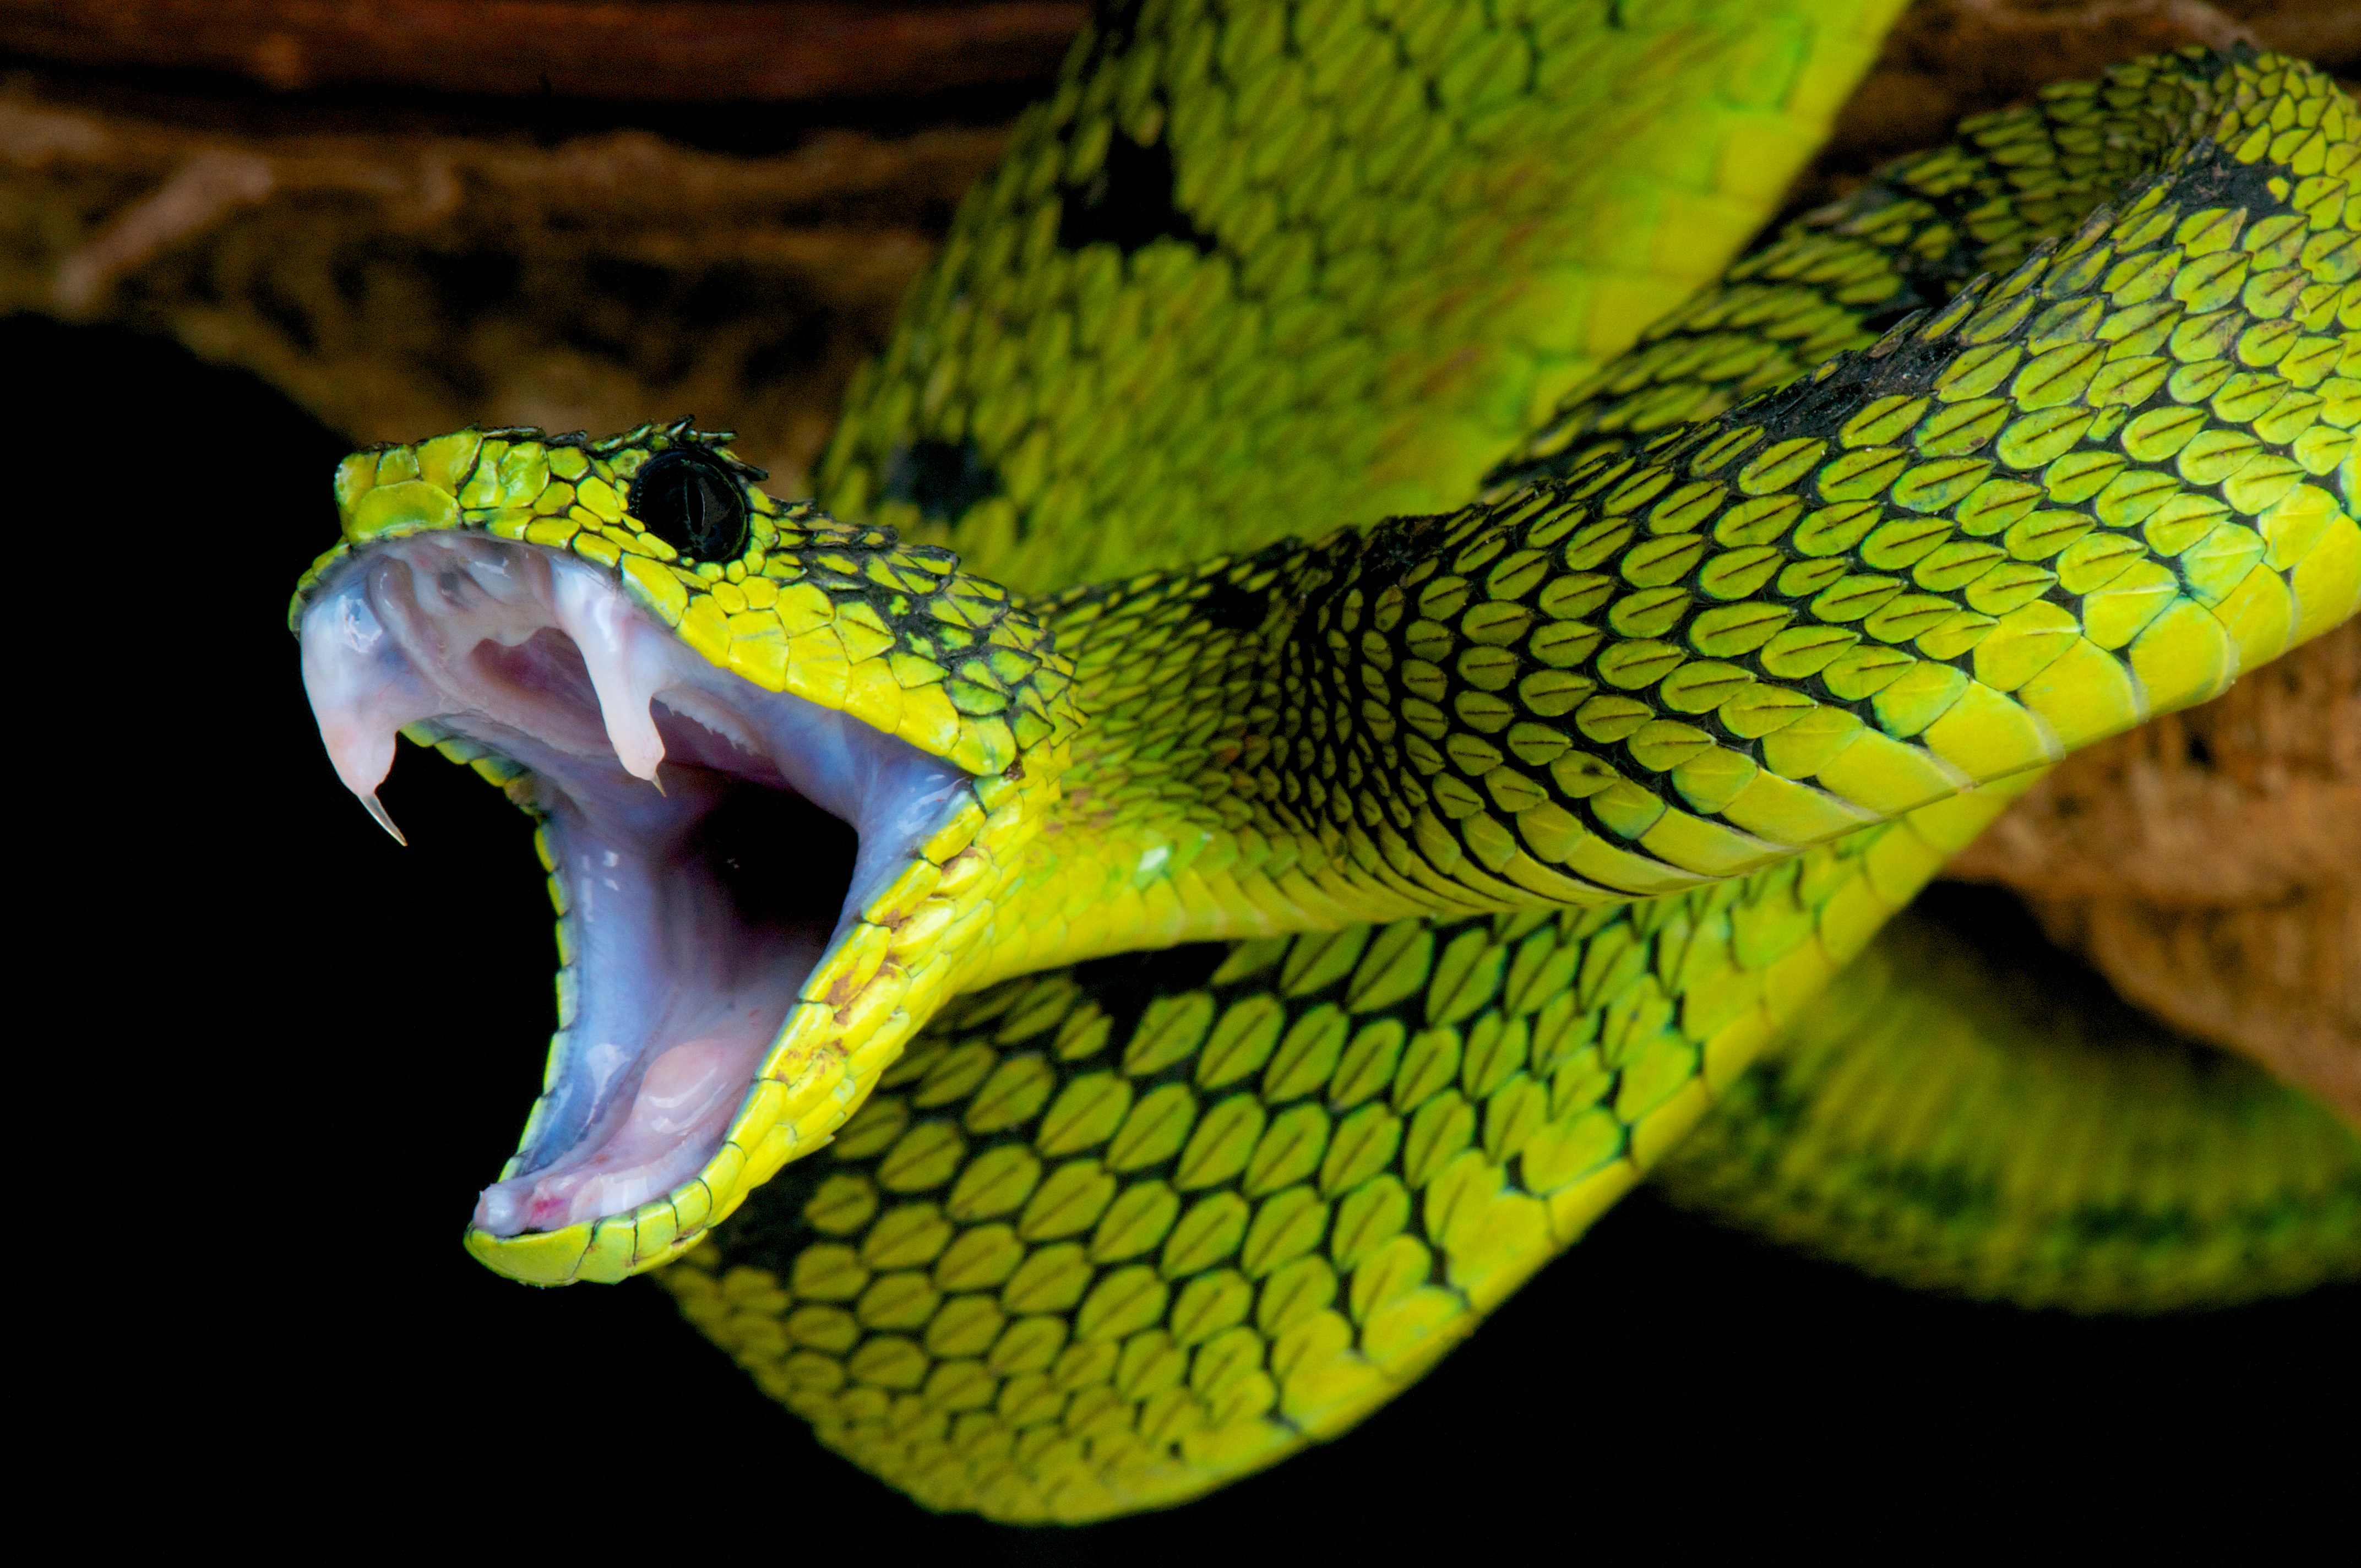 Les morsures de serpents sont toujours une source d'inquiétude en raison de l'inoculation potentielle de venin. Une connaissance préalable des premiers gestes à adopter en cas de morsure permet de gérer au mieux ces situations d'urgence. © mgkuijpers, Adobe Stock